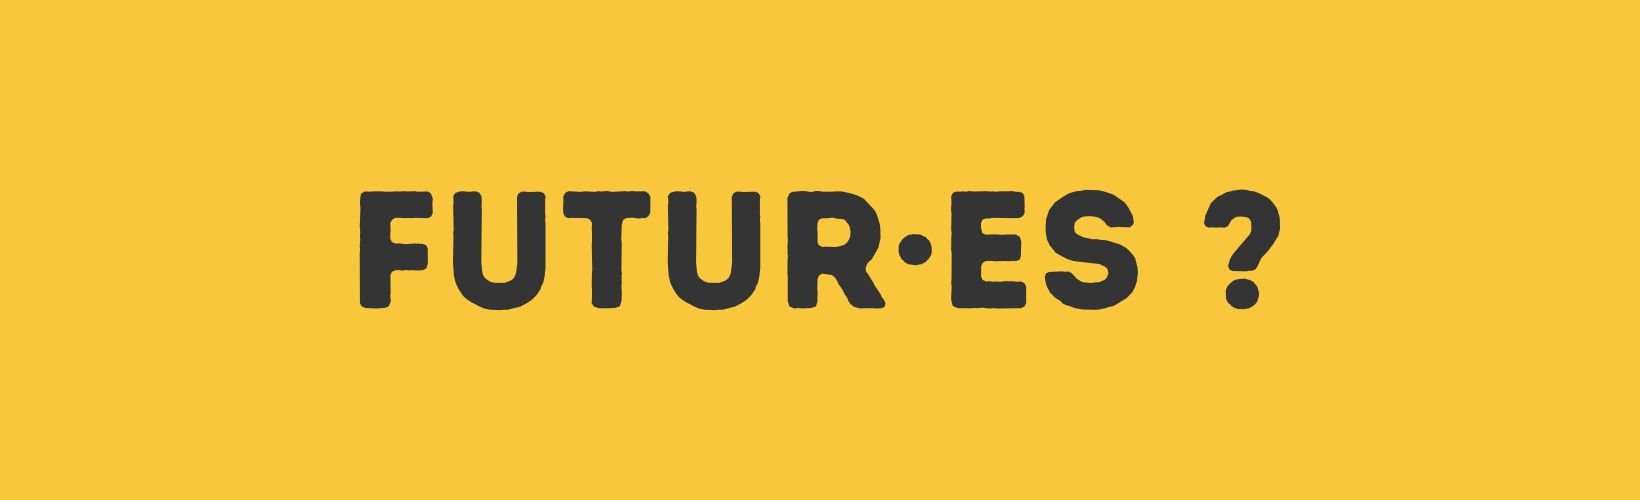 Futures, écrit en lettres majuscules sur fond jaune